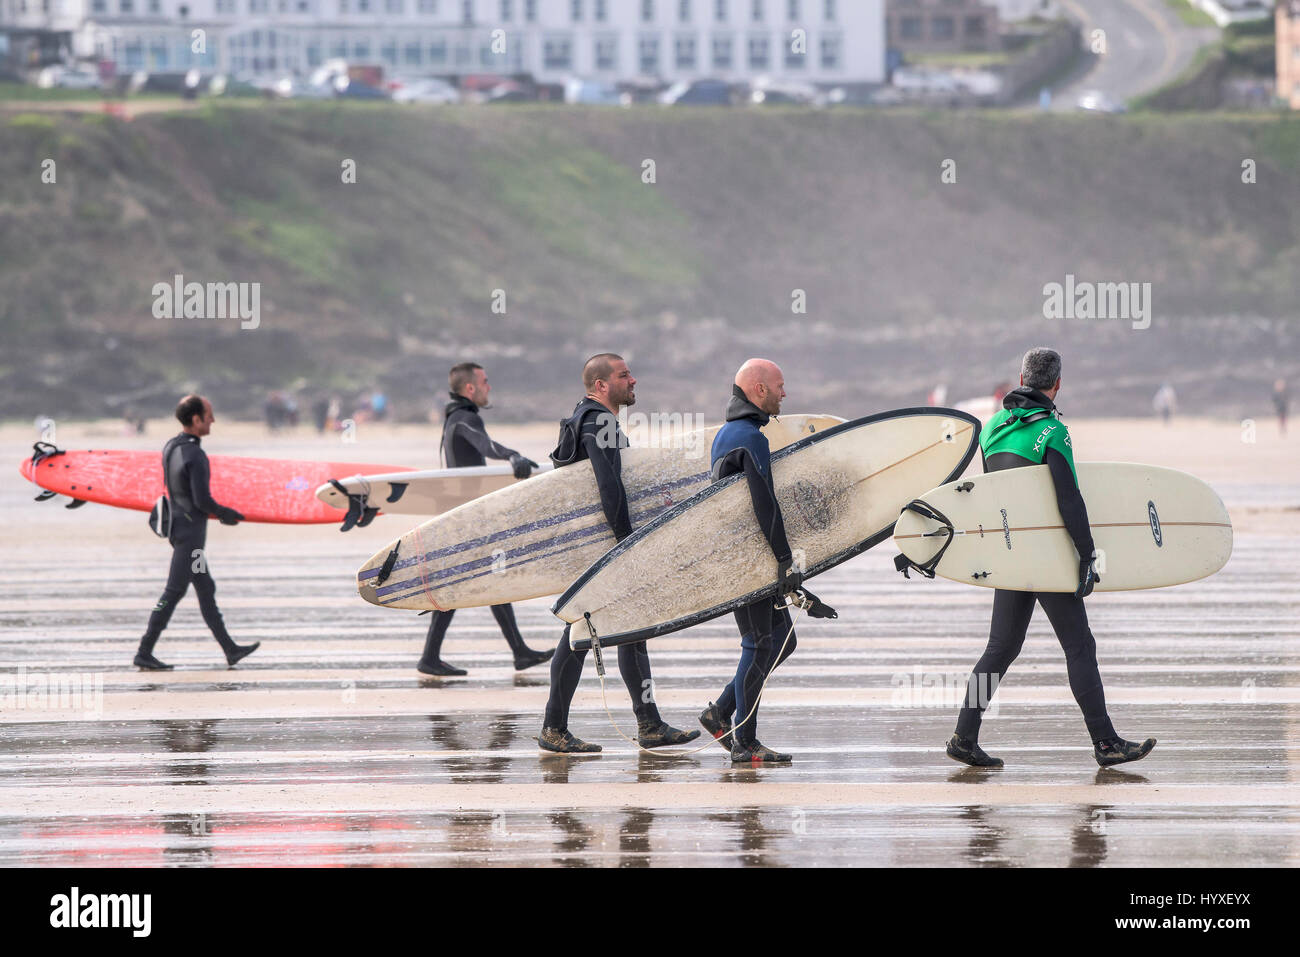 Los surfistas llevar tablas de surf surf UK Cornwall caminando sobre náutica de recreo en el estilo de vida de actividad de ocio amigos Foto de stock